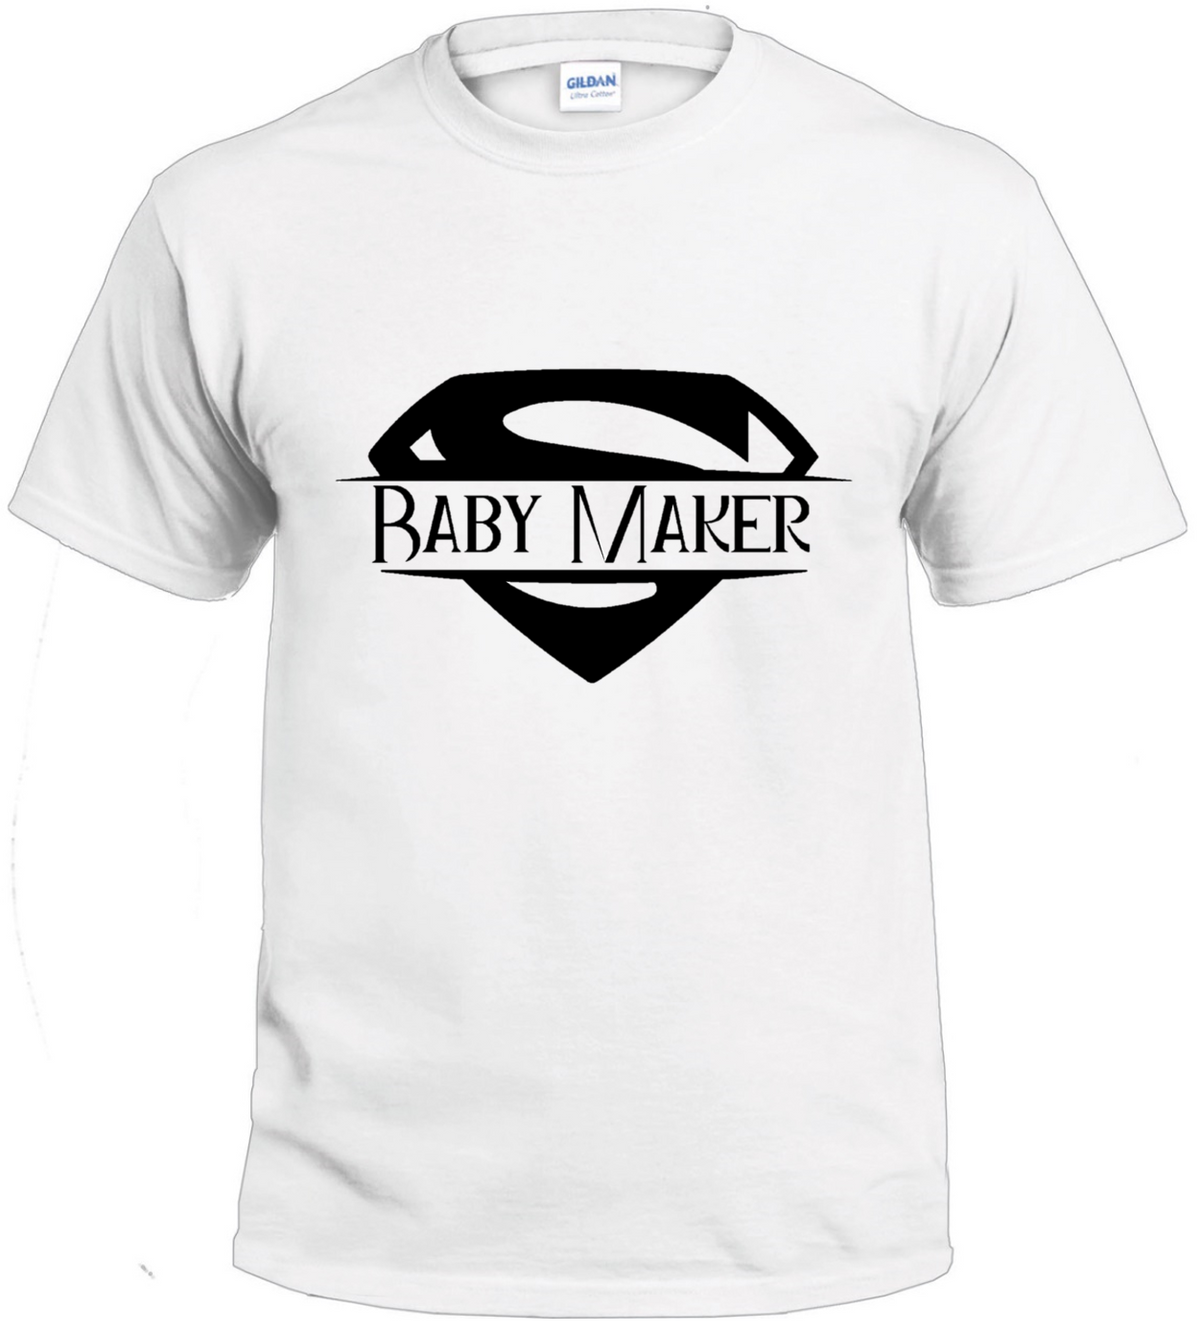 Super Baby Maker t-shirt